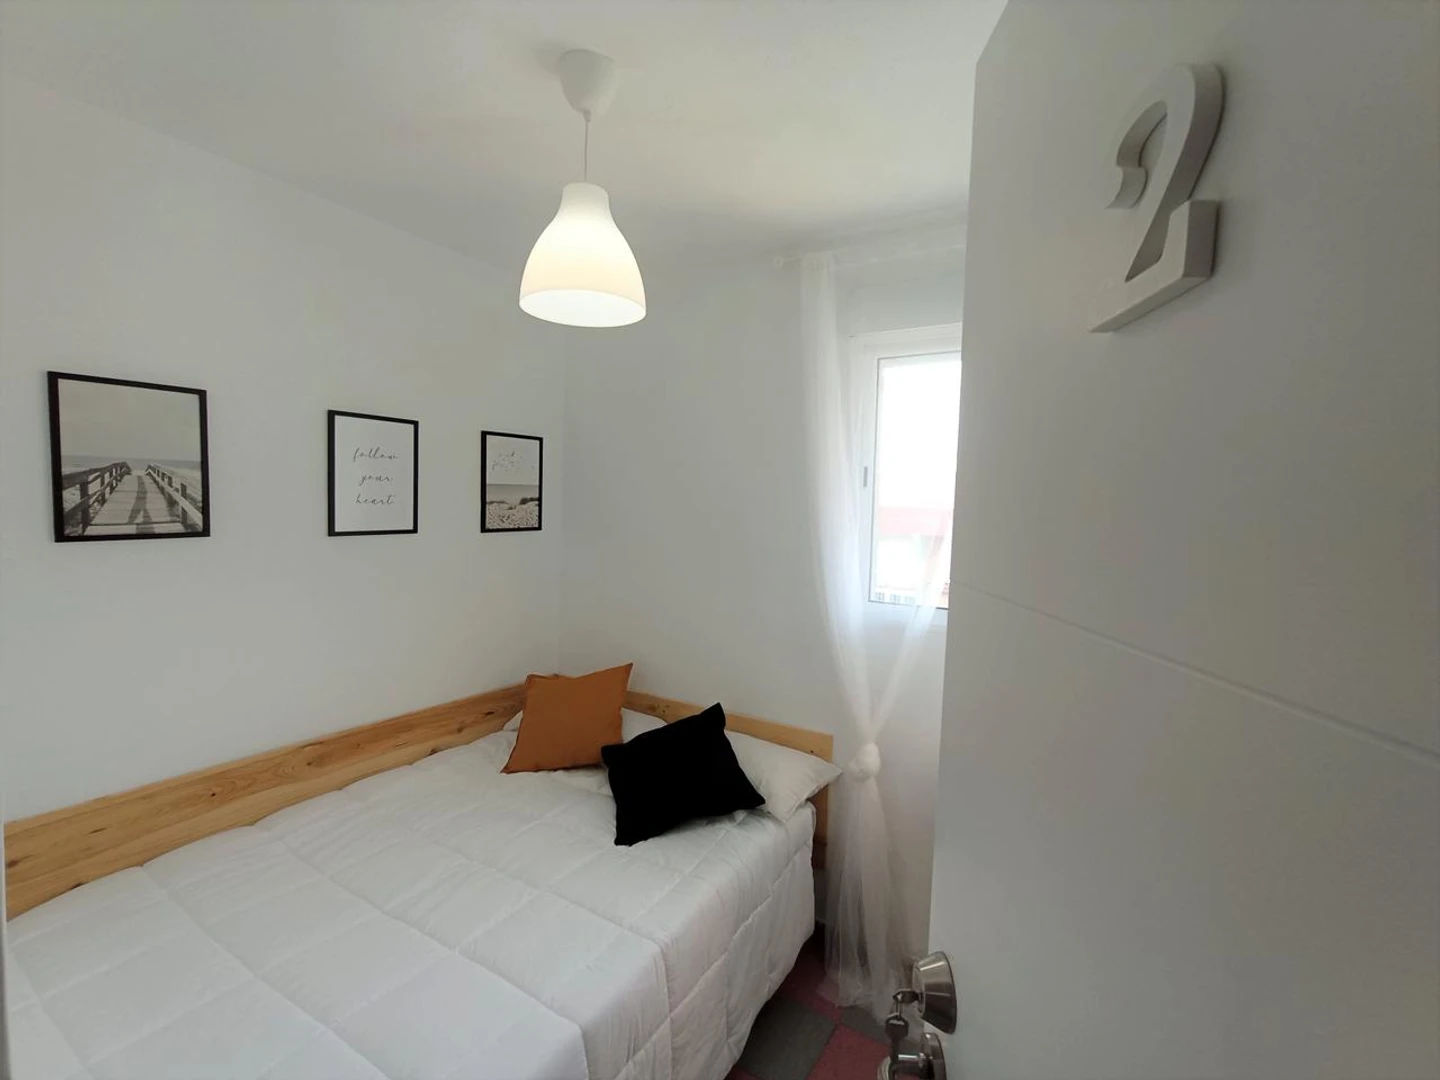 Shared room in 3-bedroom flat Granada